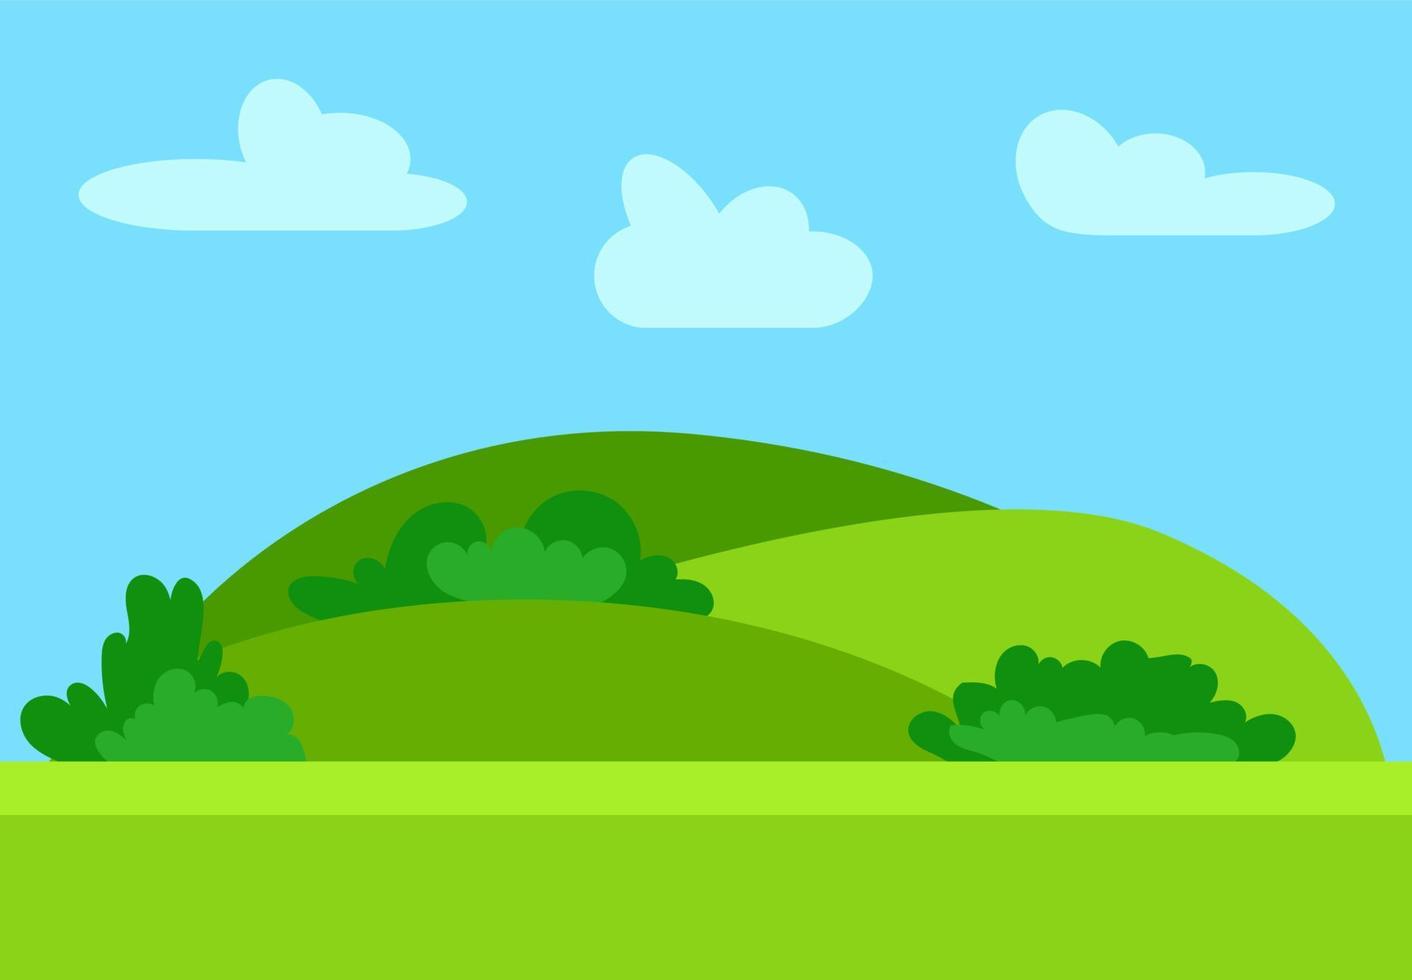 natürliche karikaturlandschaft im flachen stil mit grünen hügeln, blauem himmel und wolken am sonnigen tag. Vektor-Illustration vektor